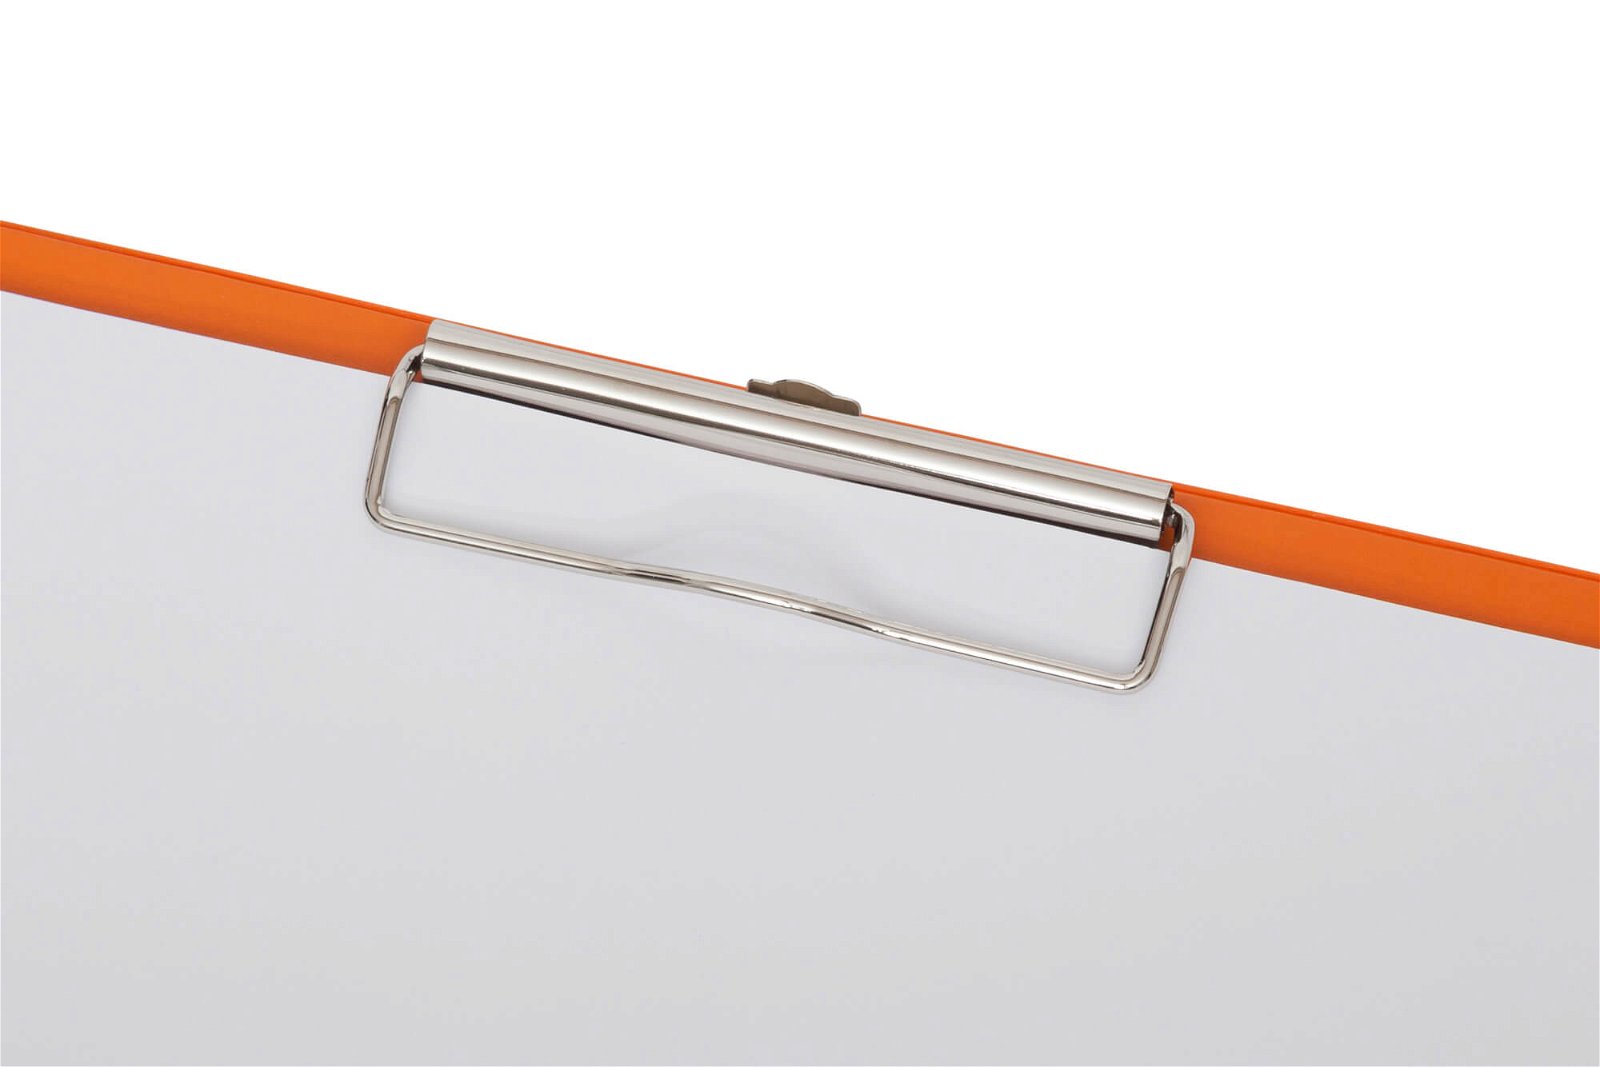 A4 Schreibplatte mit Folien- überzug, orange